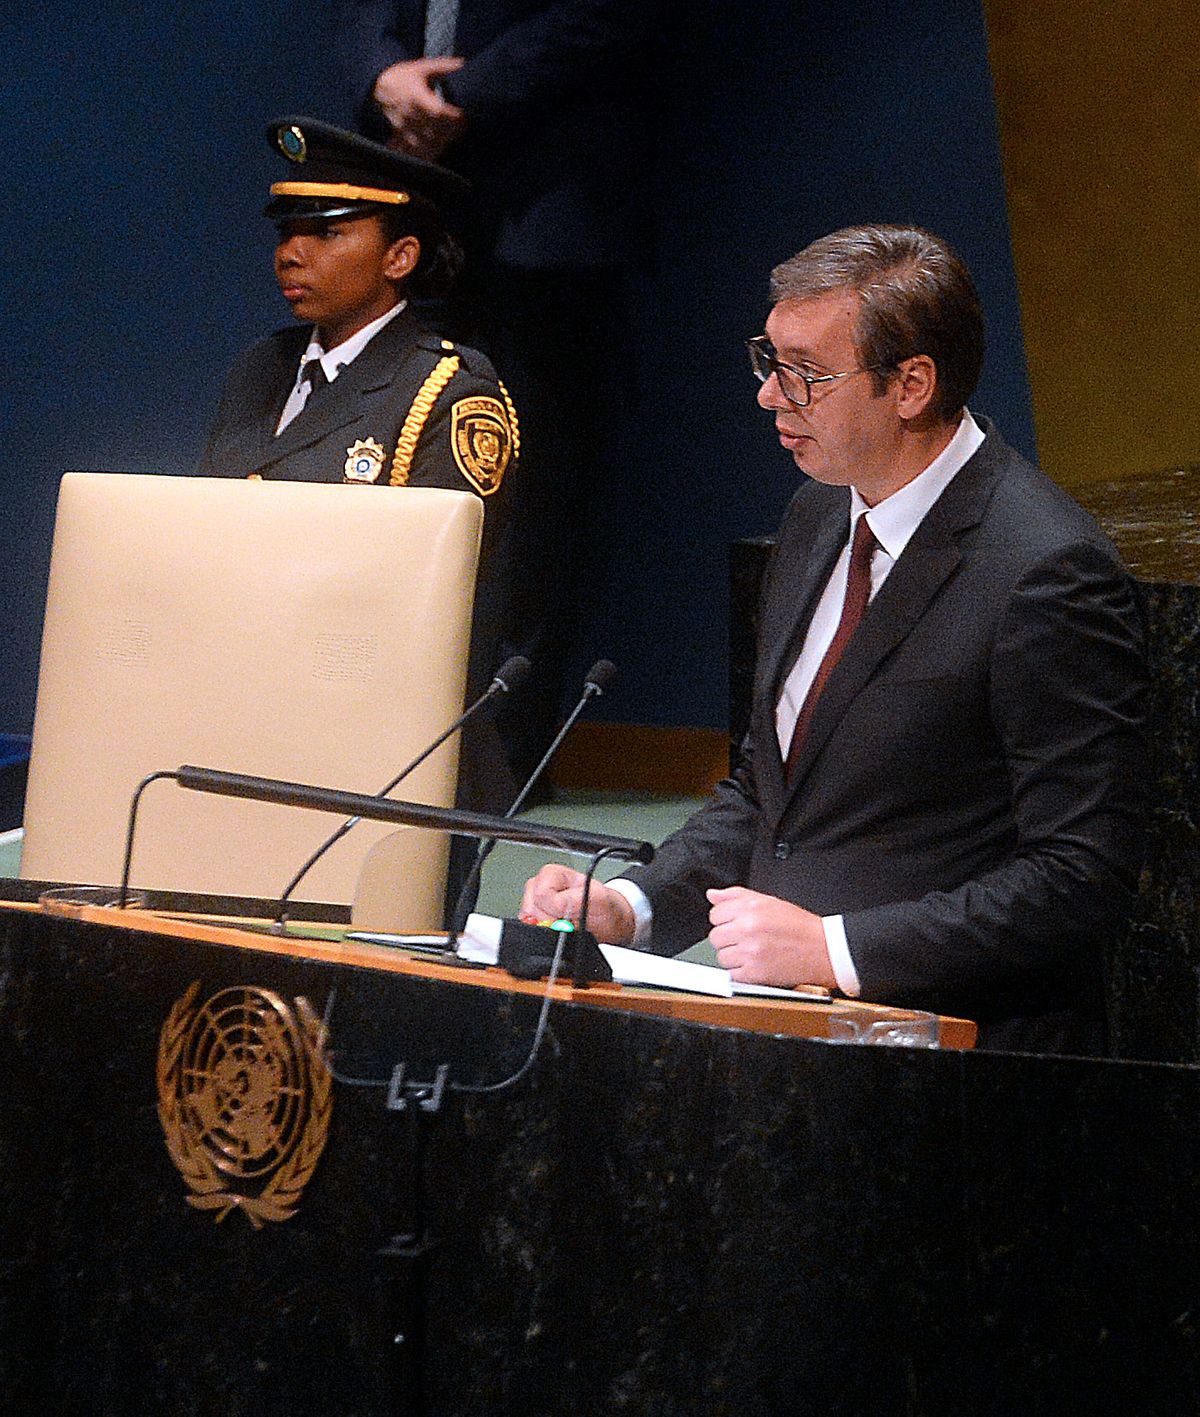 Obraćanje predsednika Republike Srbije na Generalnoj skupštini Ujedinjenih nacija